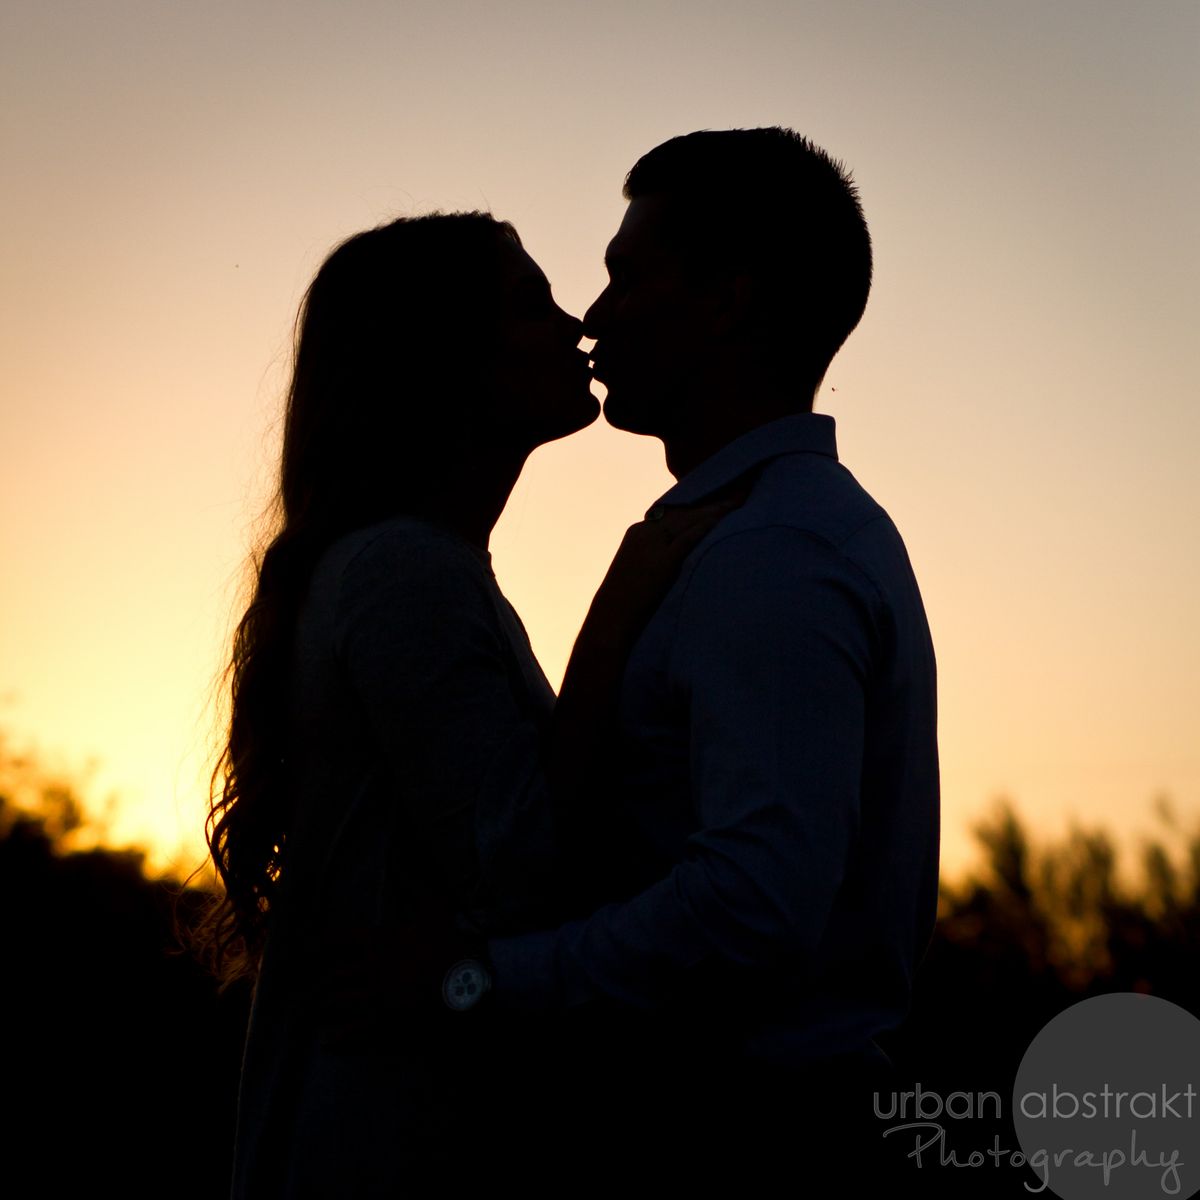 Tucson couples engagement portrait photography